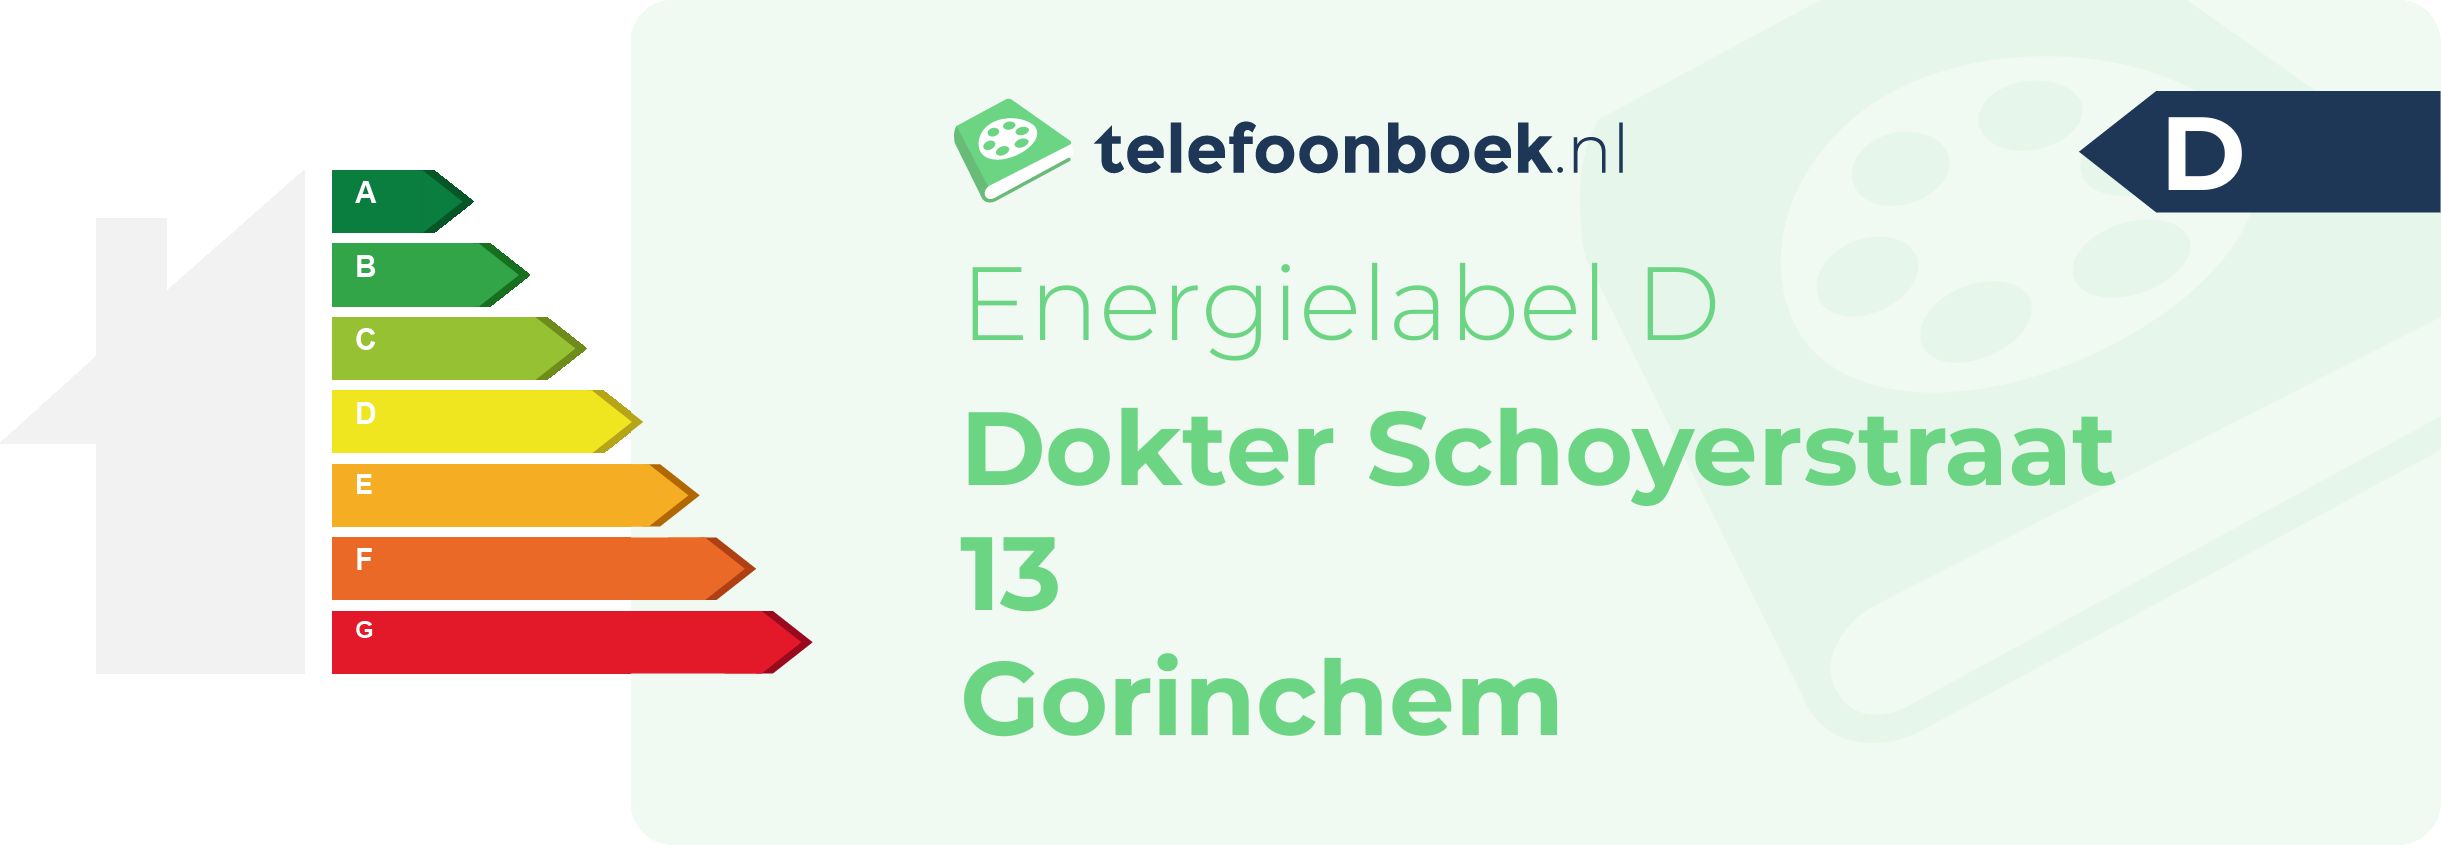 Energielabel Dokter Schoyerstraat 13 Gorinchem